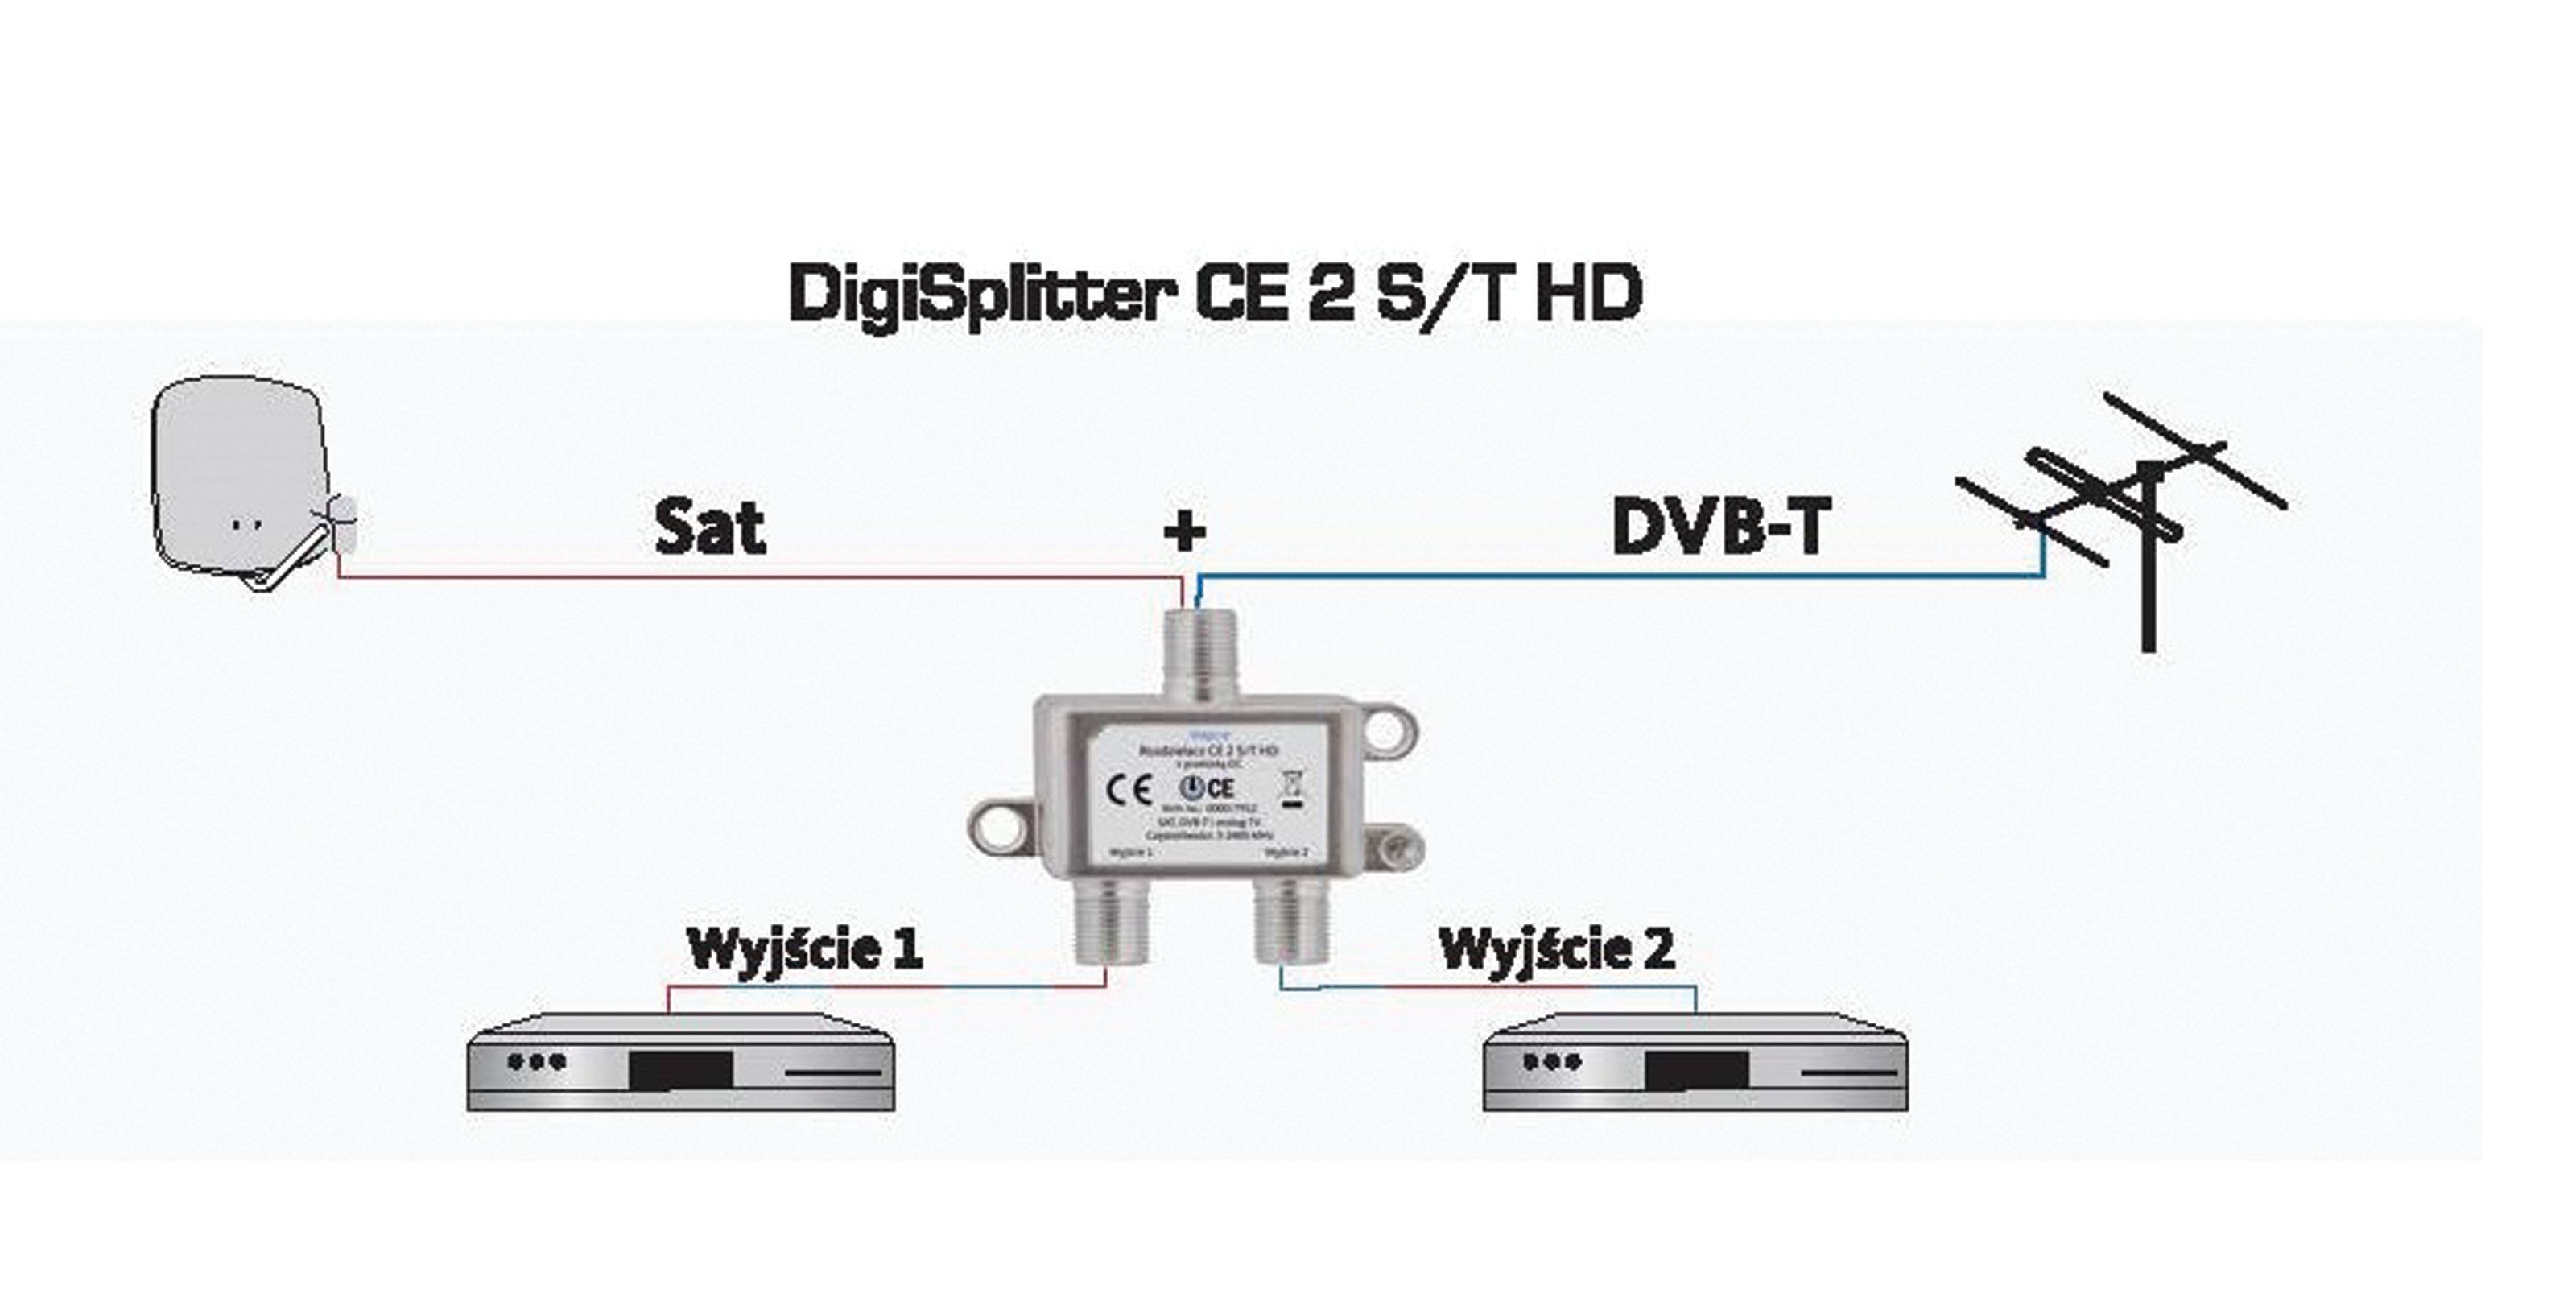 DIGISPLITTER 2 S/T HD